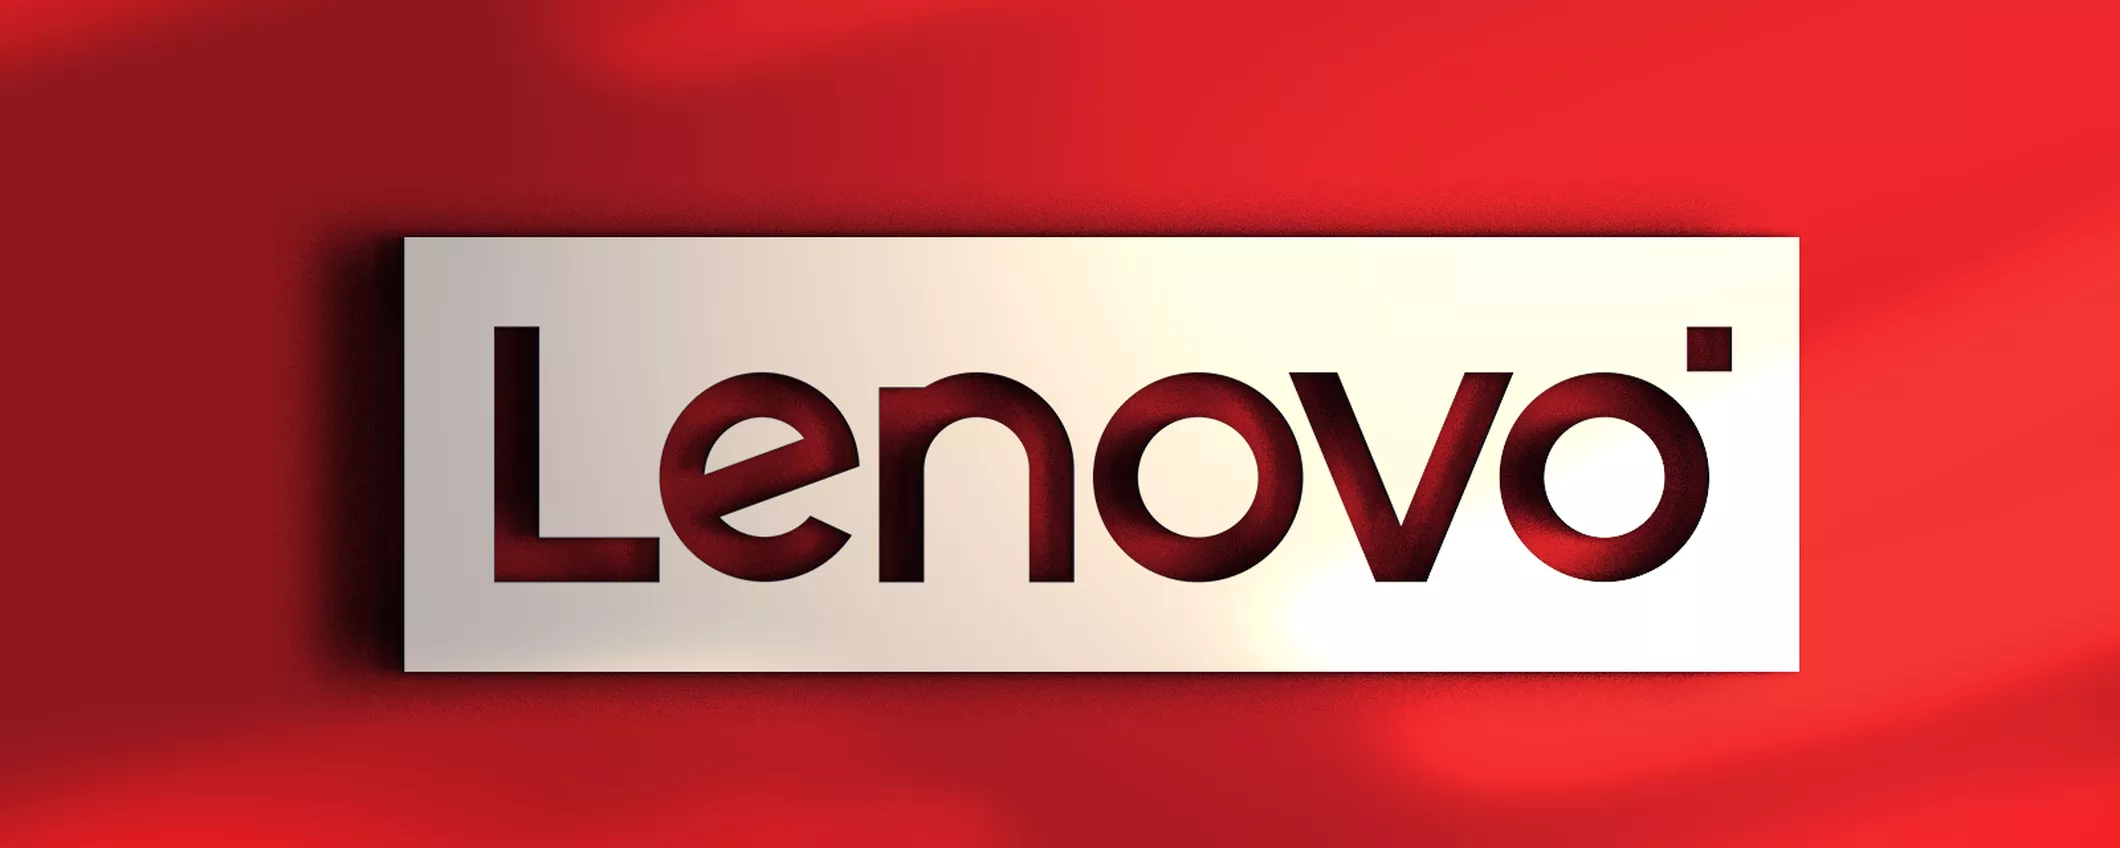 Lenovo svela al CES una serie di soluzioni per la realtà ibrida